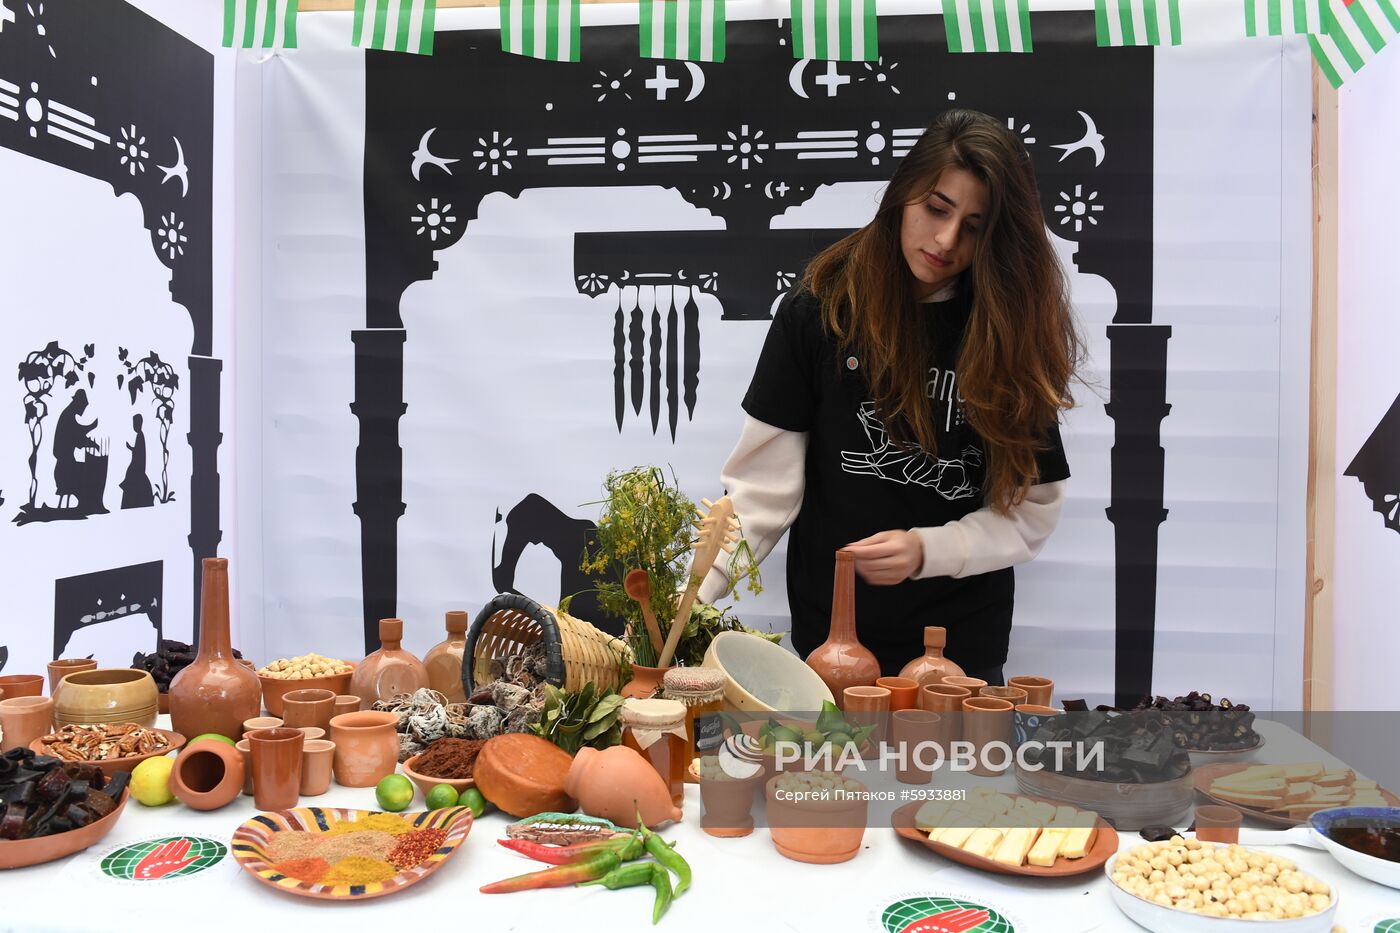 Фестиваль Абхазии "Апсны"